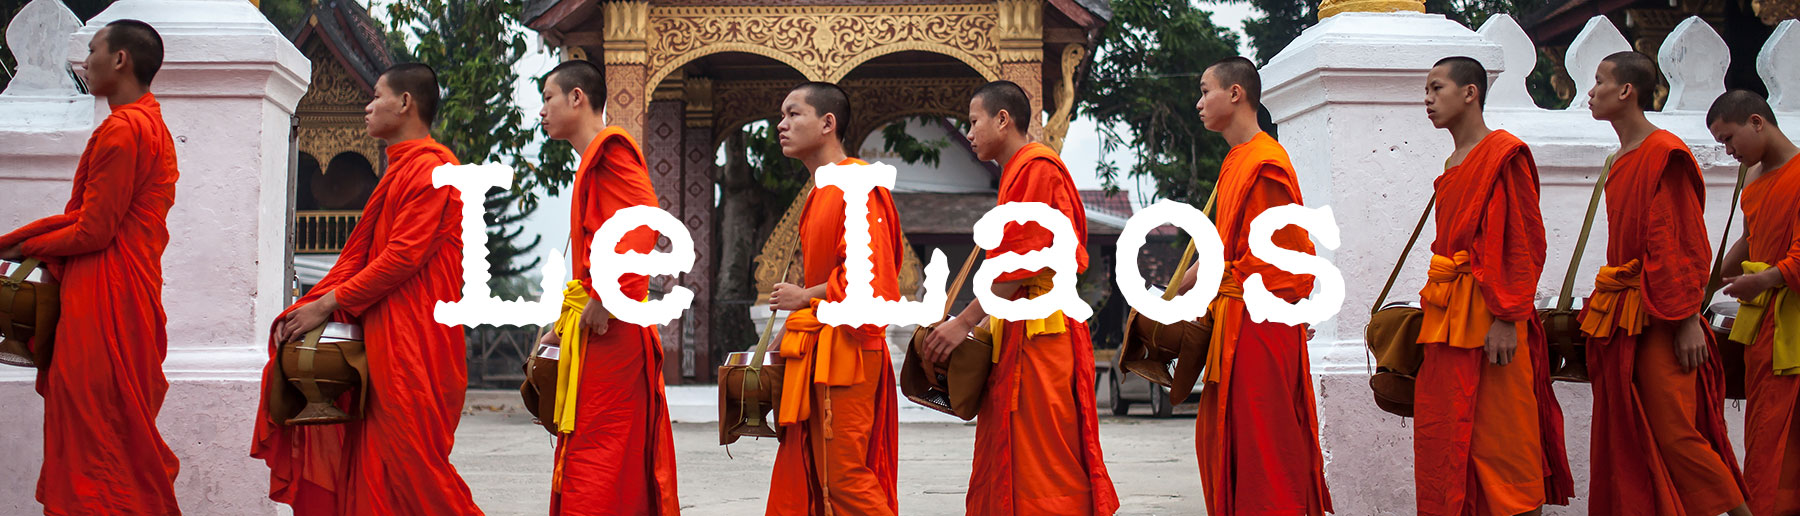 Blog sur le Laos